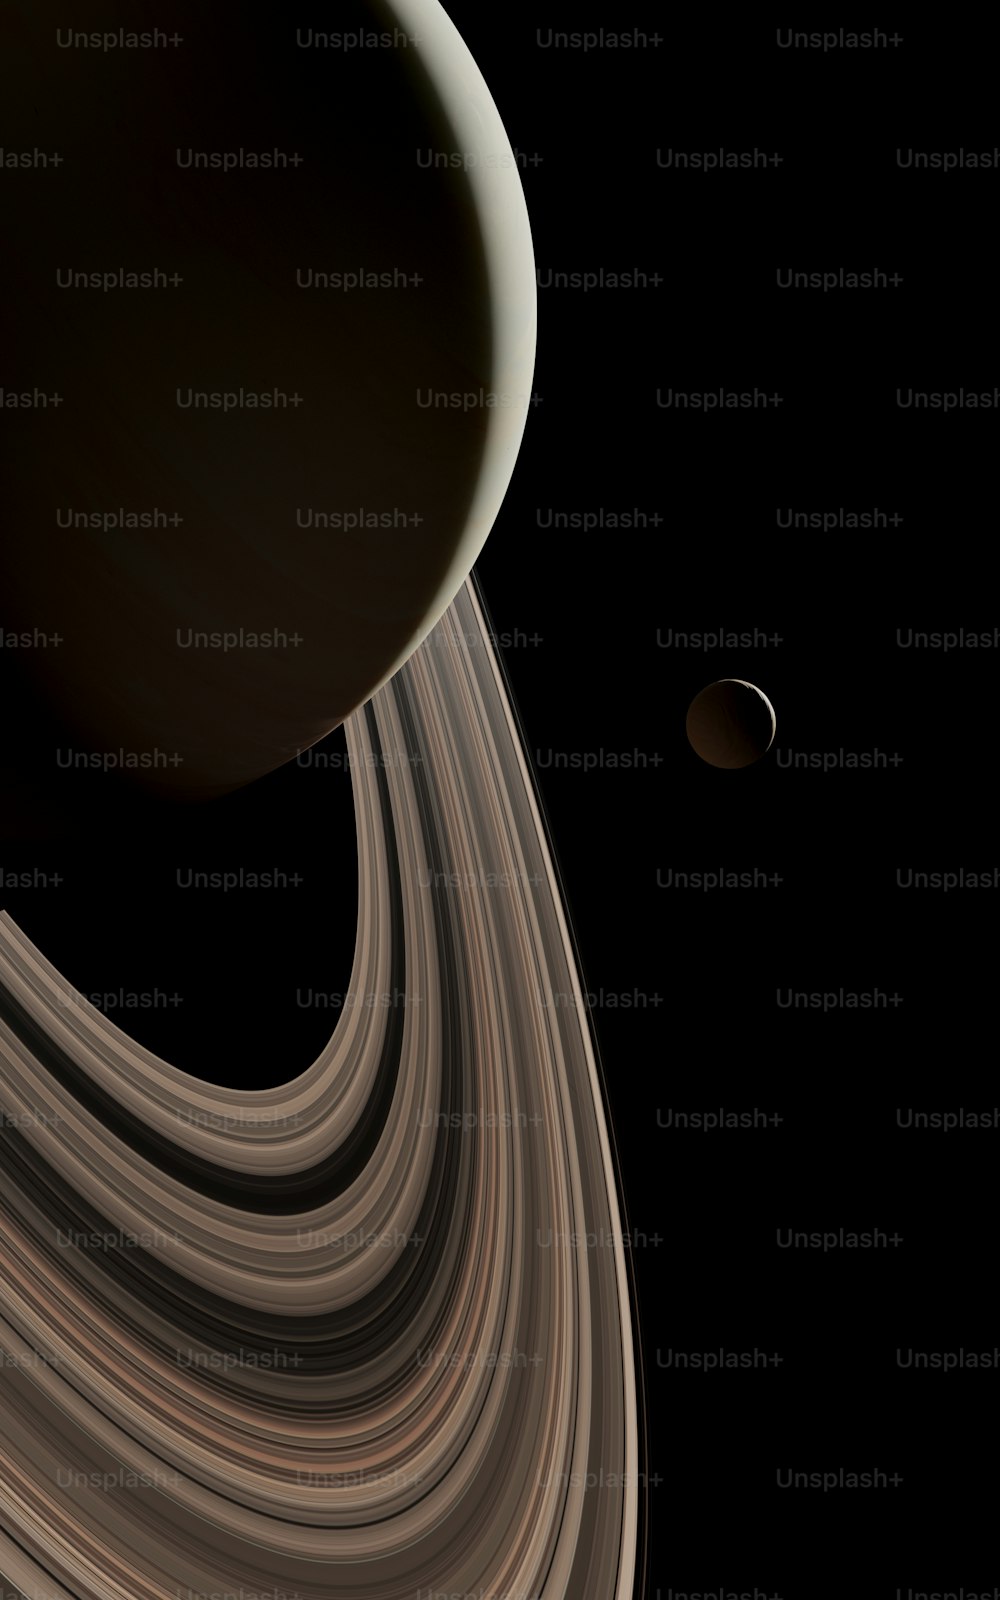 Una foto di Saturno scattata dalla sonda Cassini della NASA